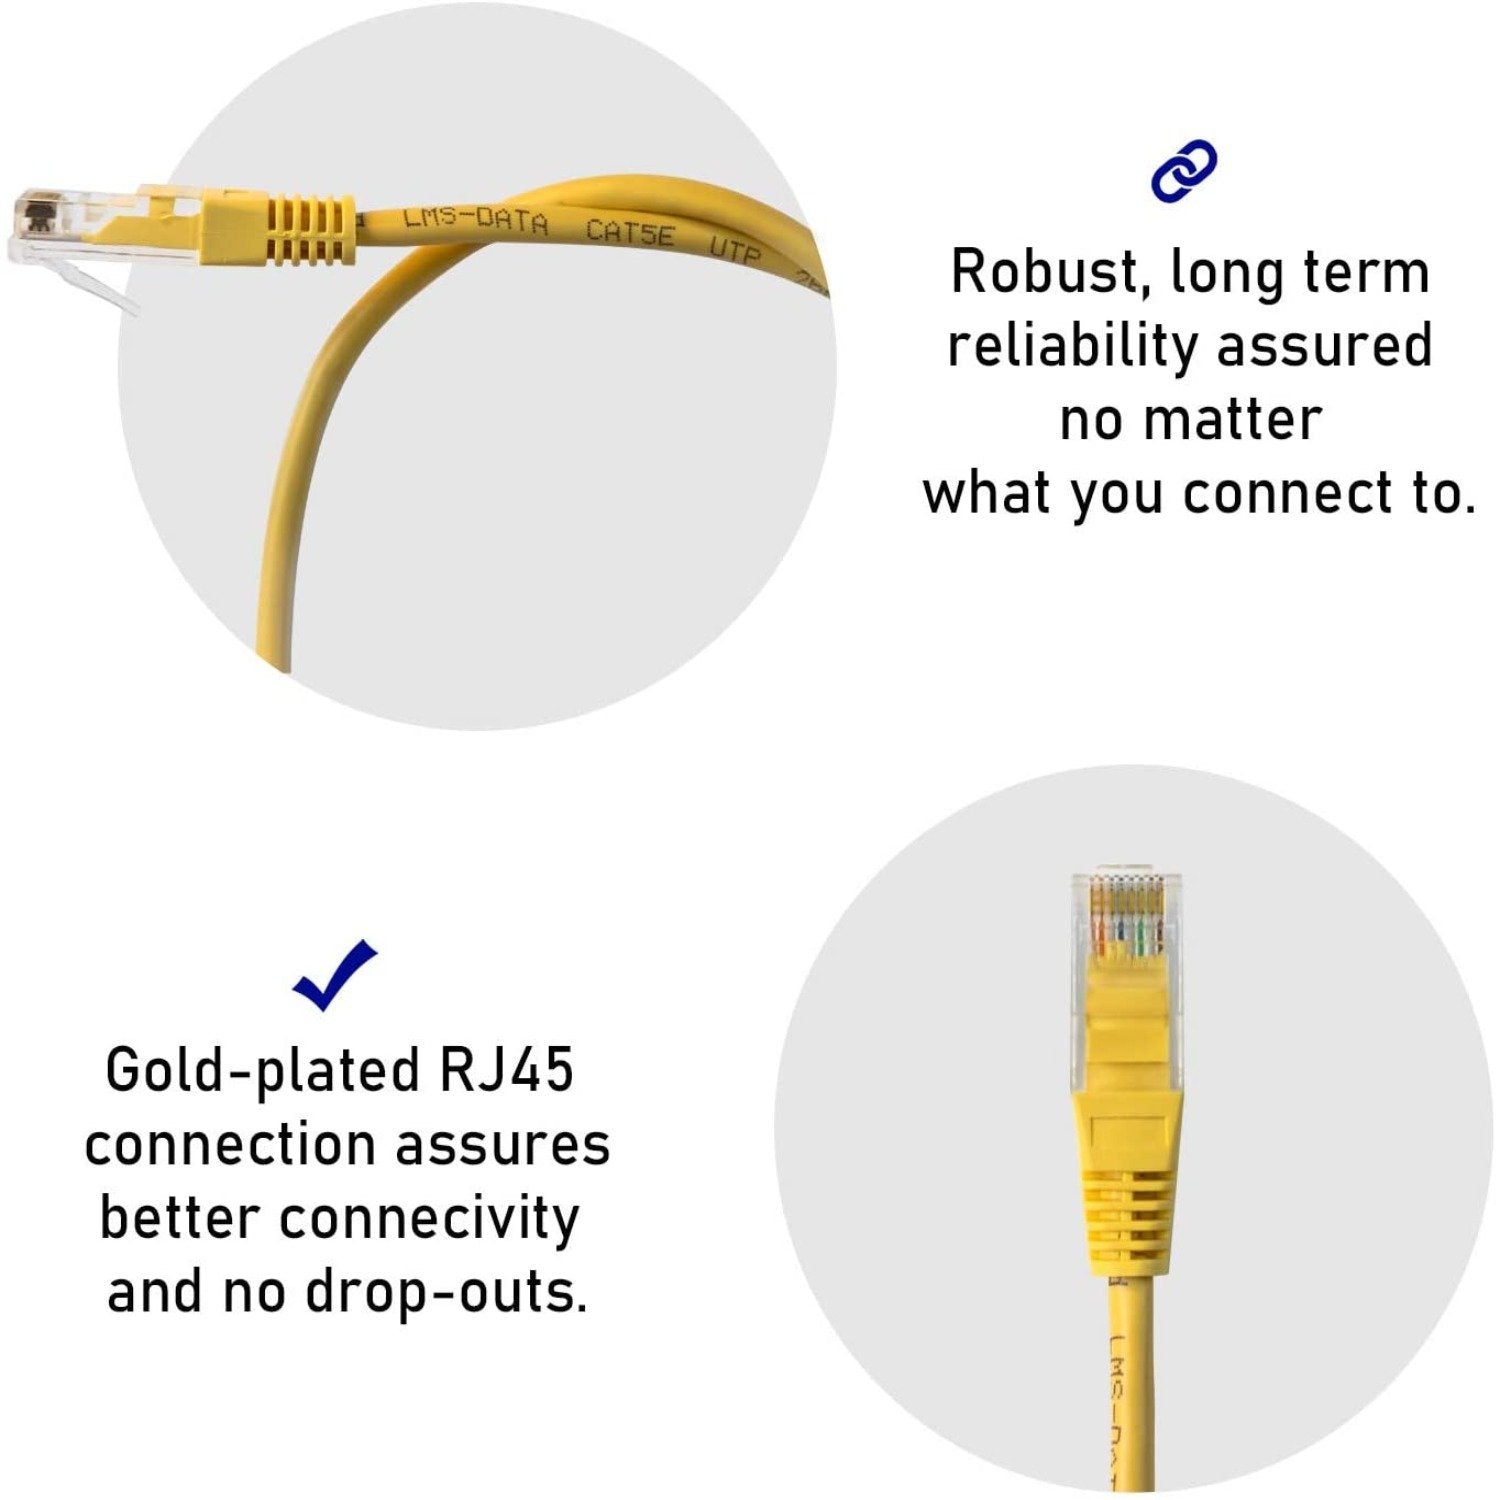 0.5m LMS Data Ethernet Cat6 RJ45 UTP Patch cable cord, LAN 10/100/1000Mbit/s Cable suitable